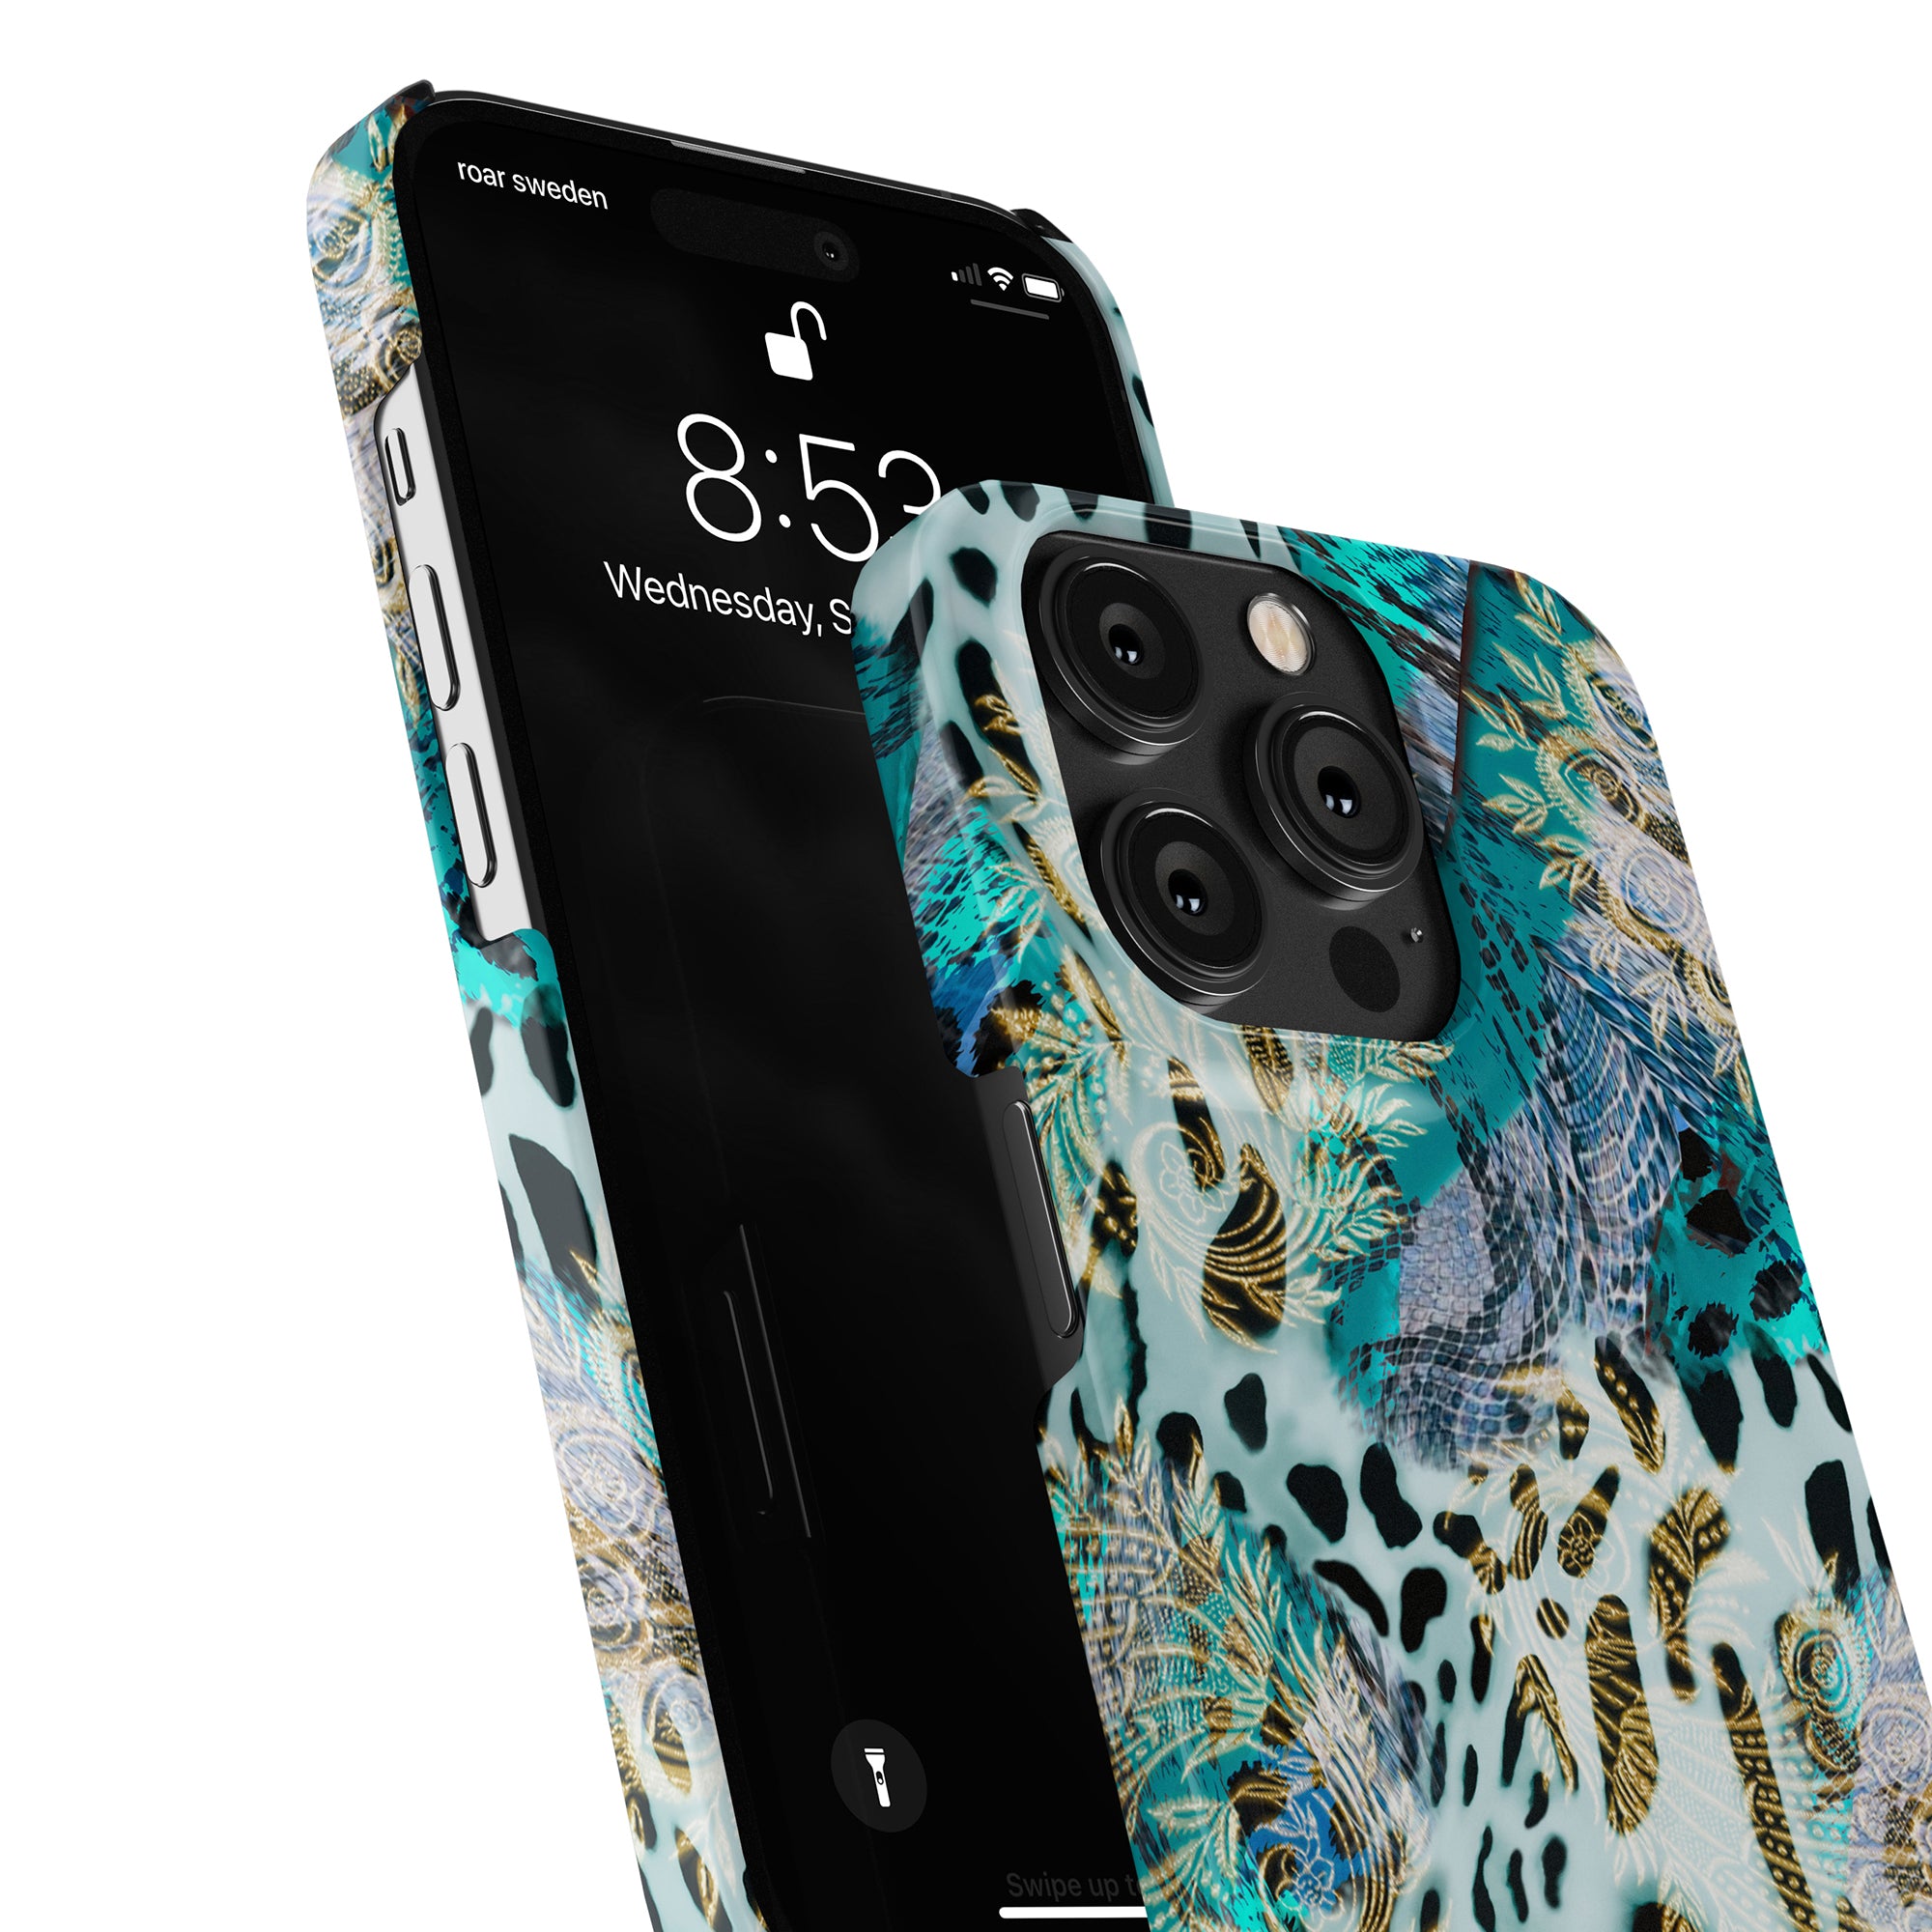 Ett Cheetah Spark - Slim fodral iPhone 11 fodral med blått leopardtryck.